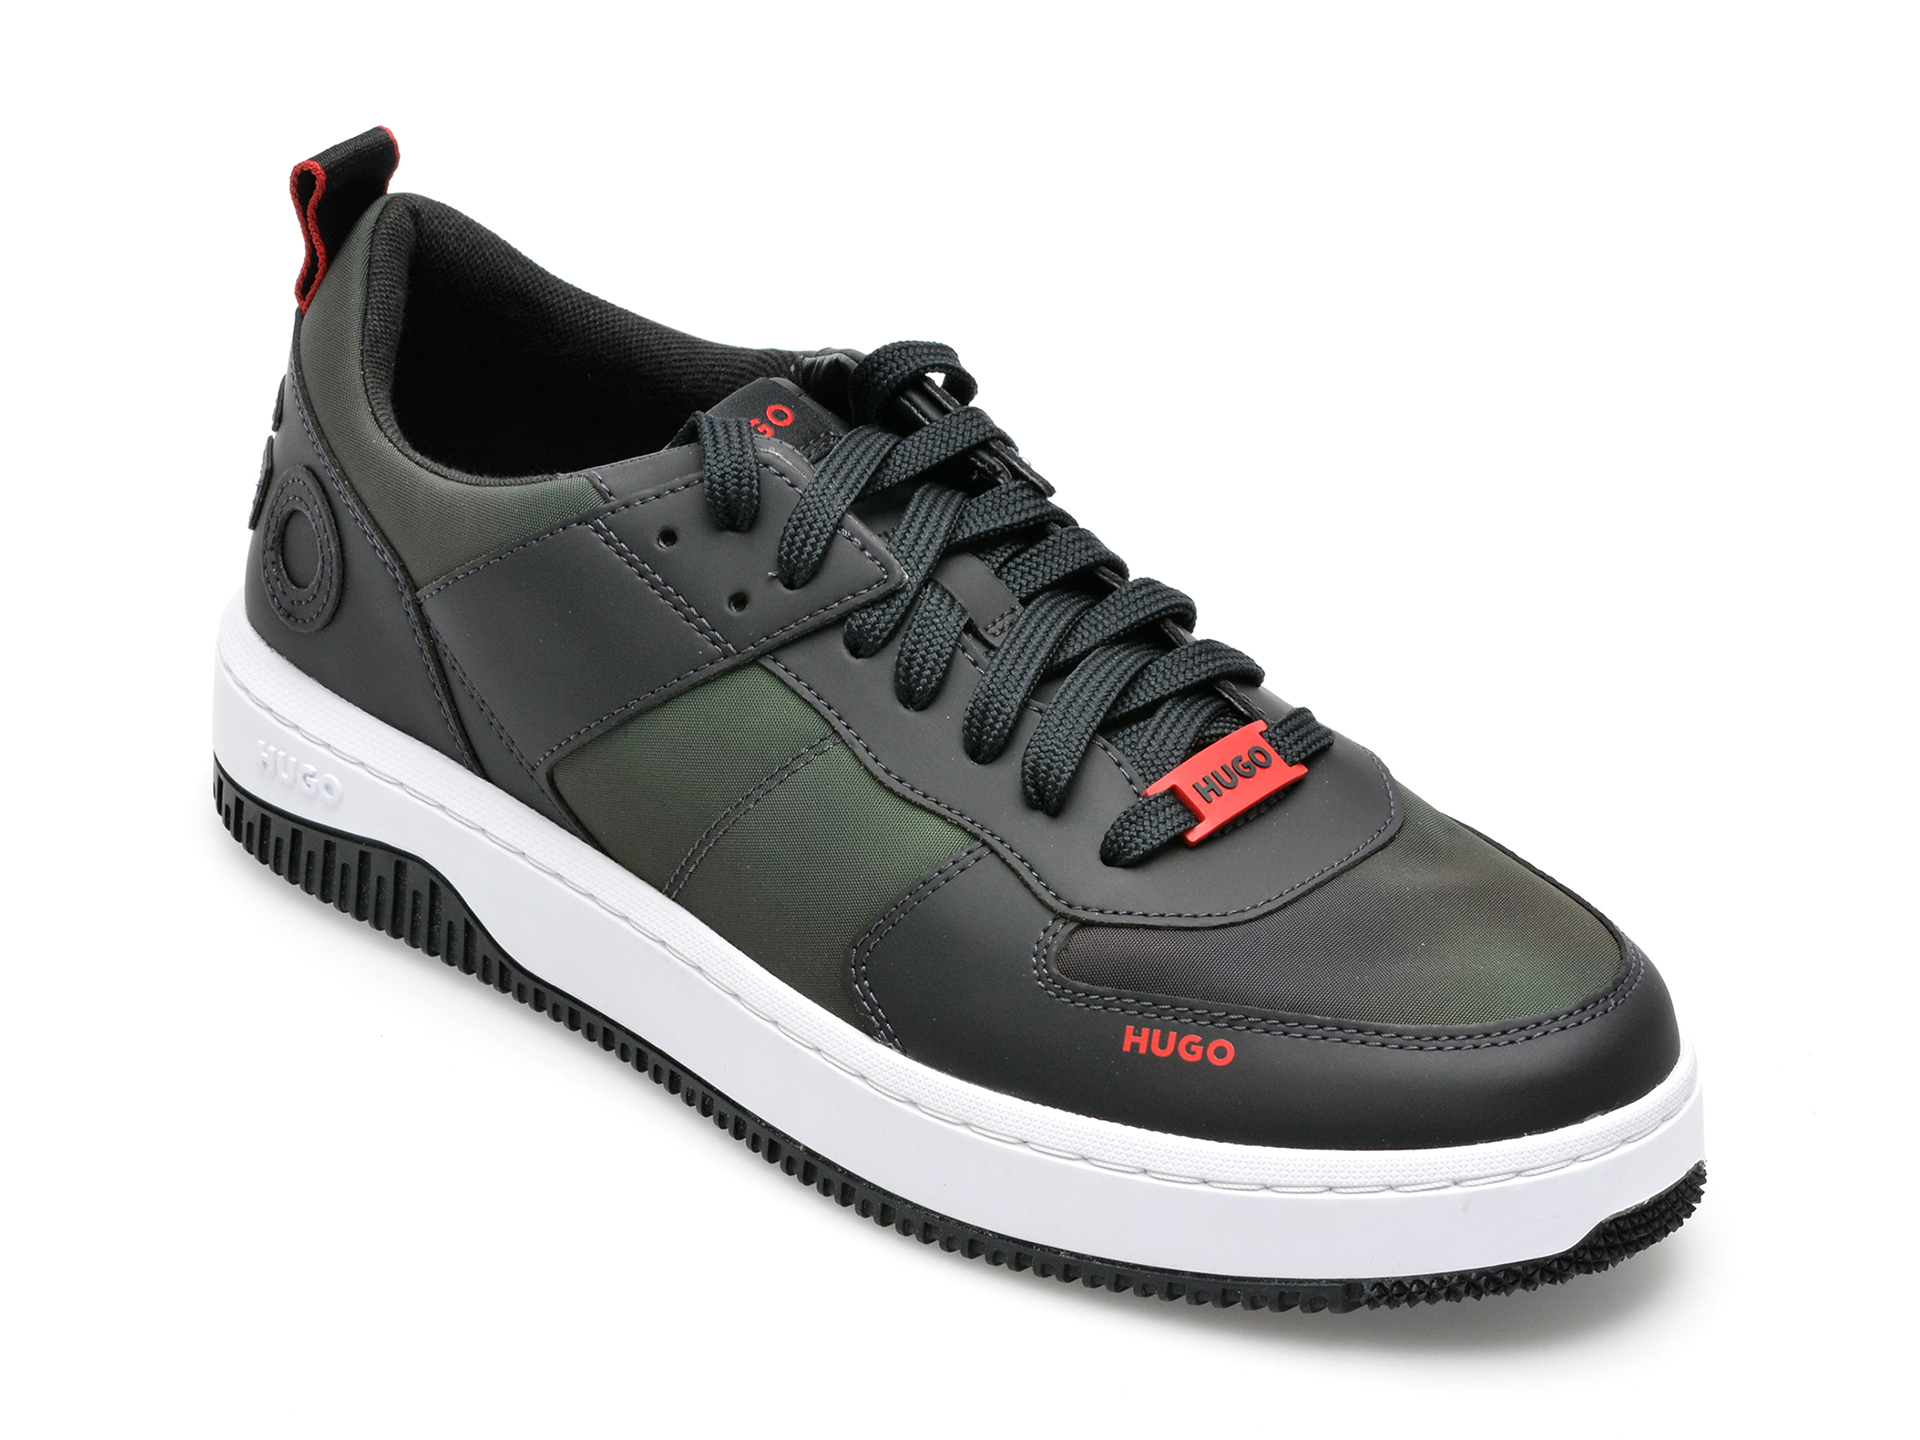 Pantofi sport HUGO kaki, 3118, din material textil BARBATI 2023-09-27